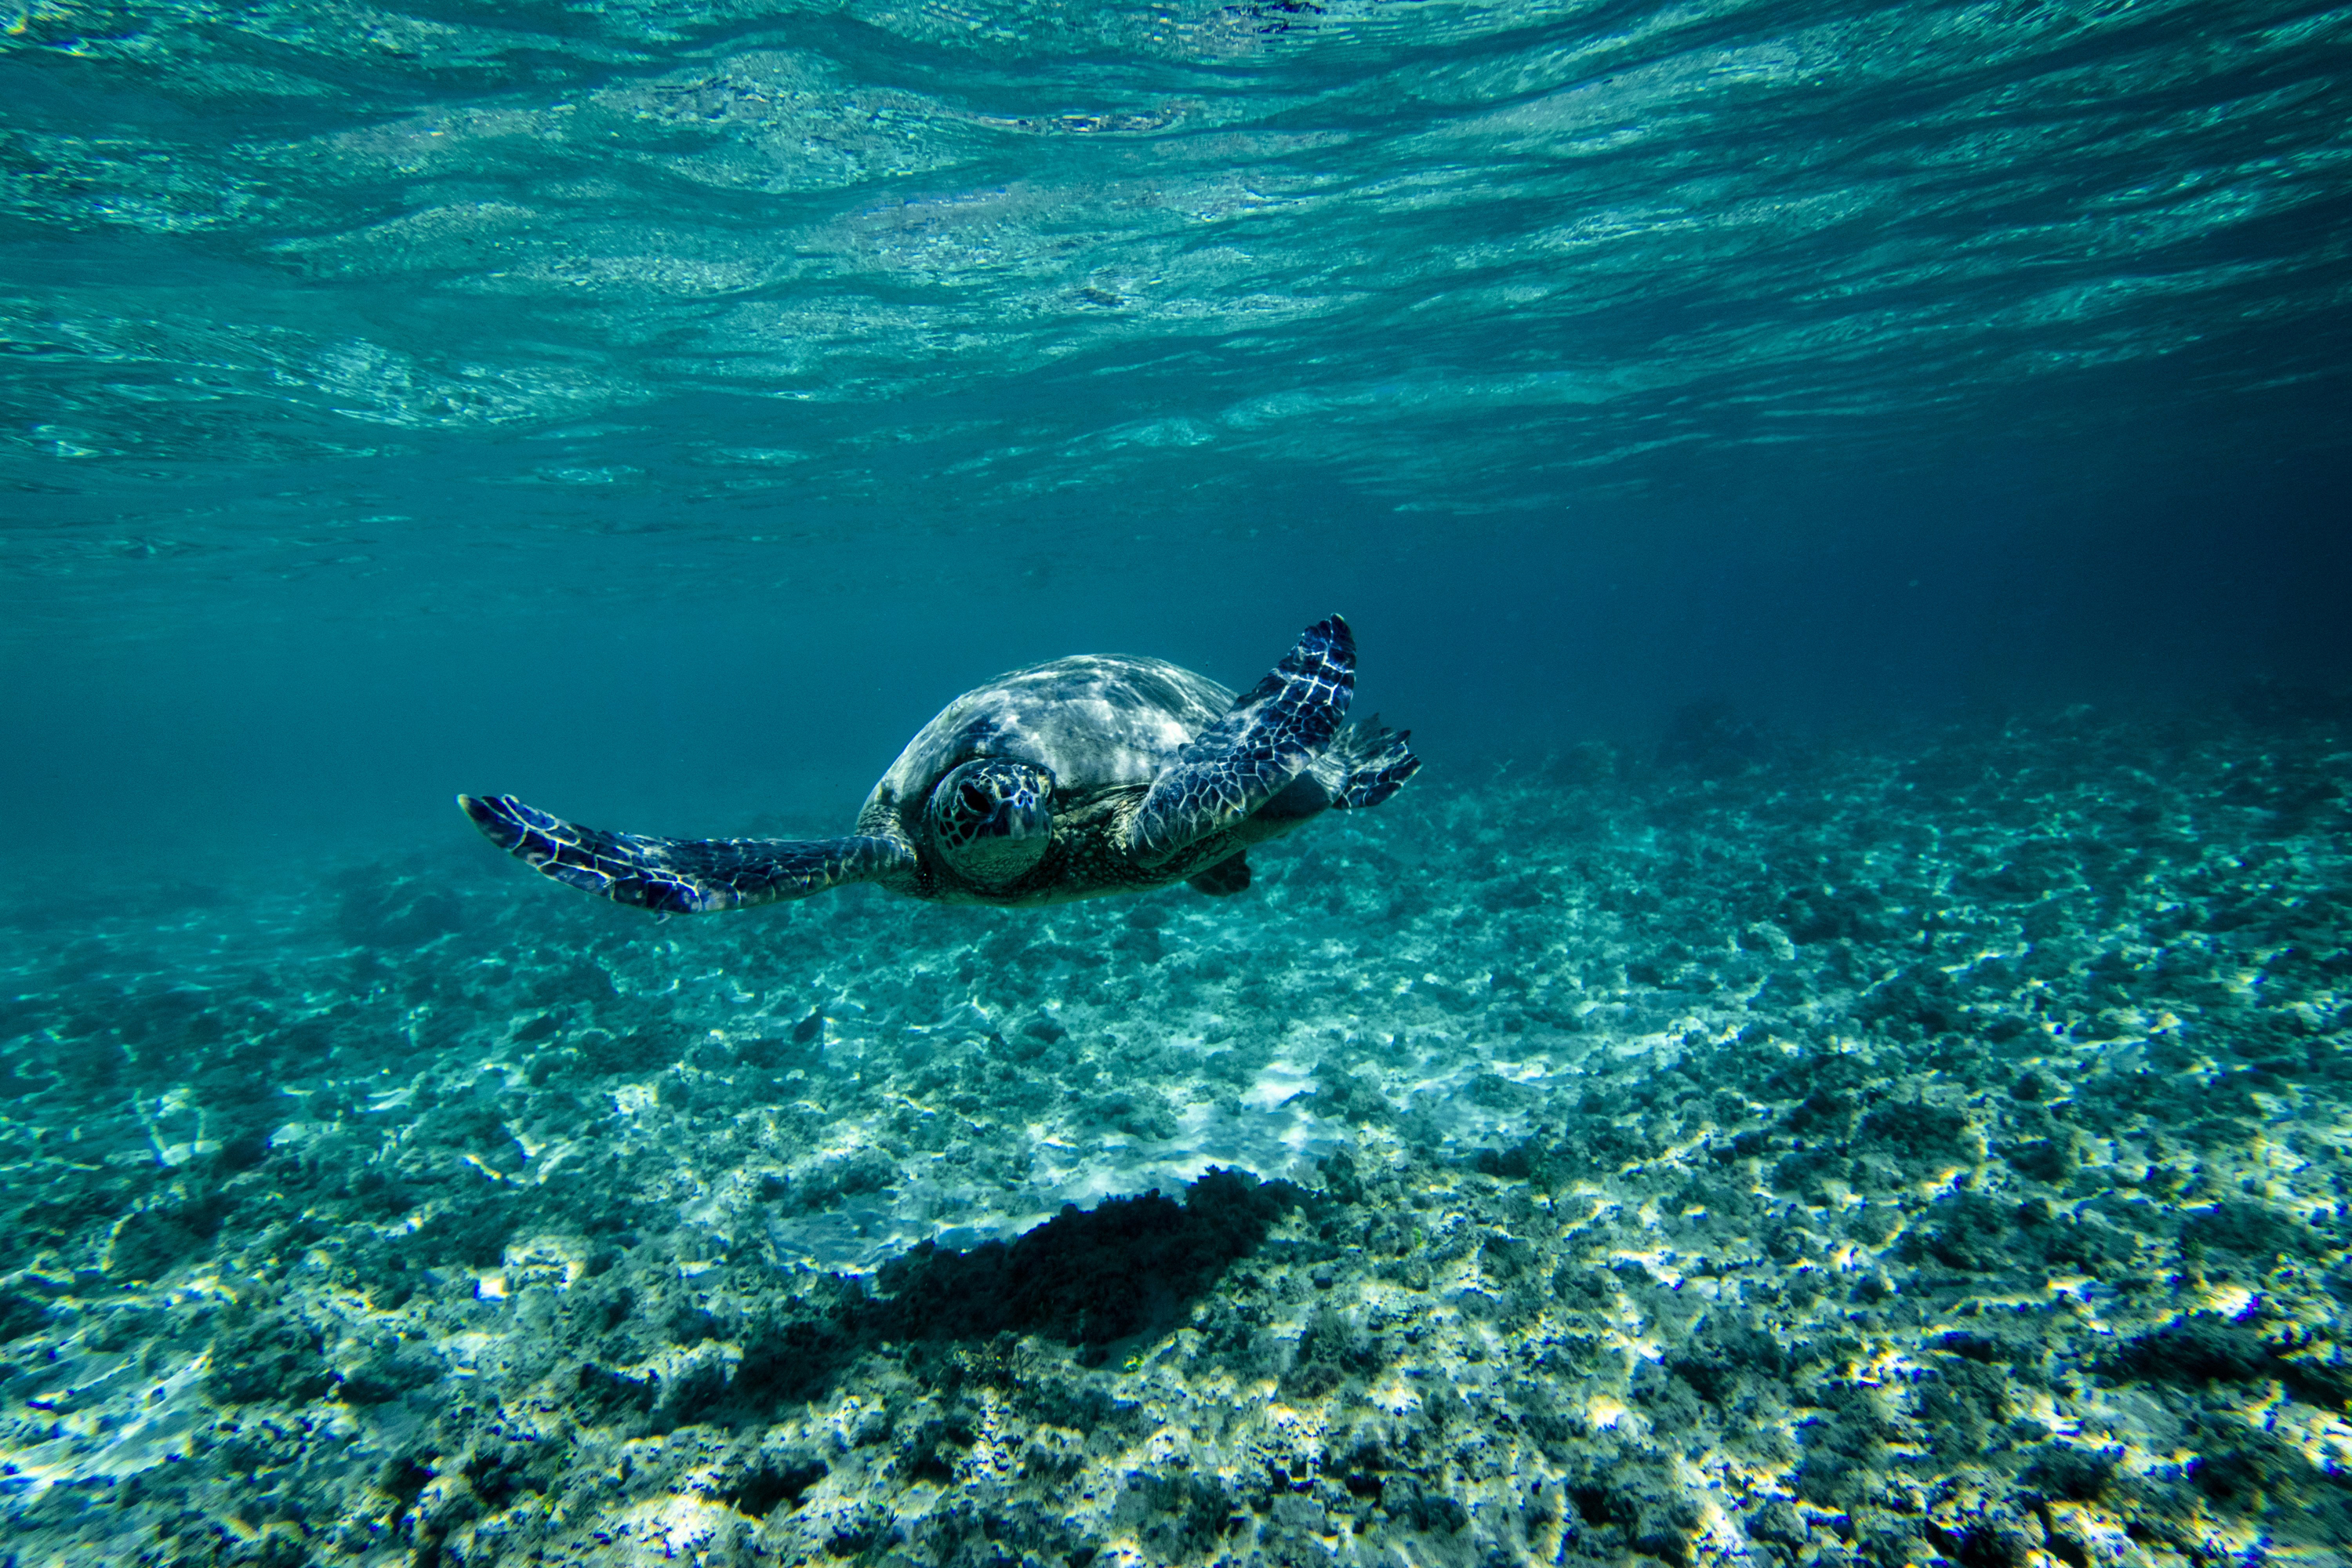 Картинка на дне моря. Морские черепахи Тихого океана. Подводный мир океана. Морские глубины. Море под водой.